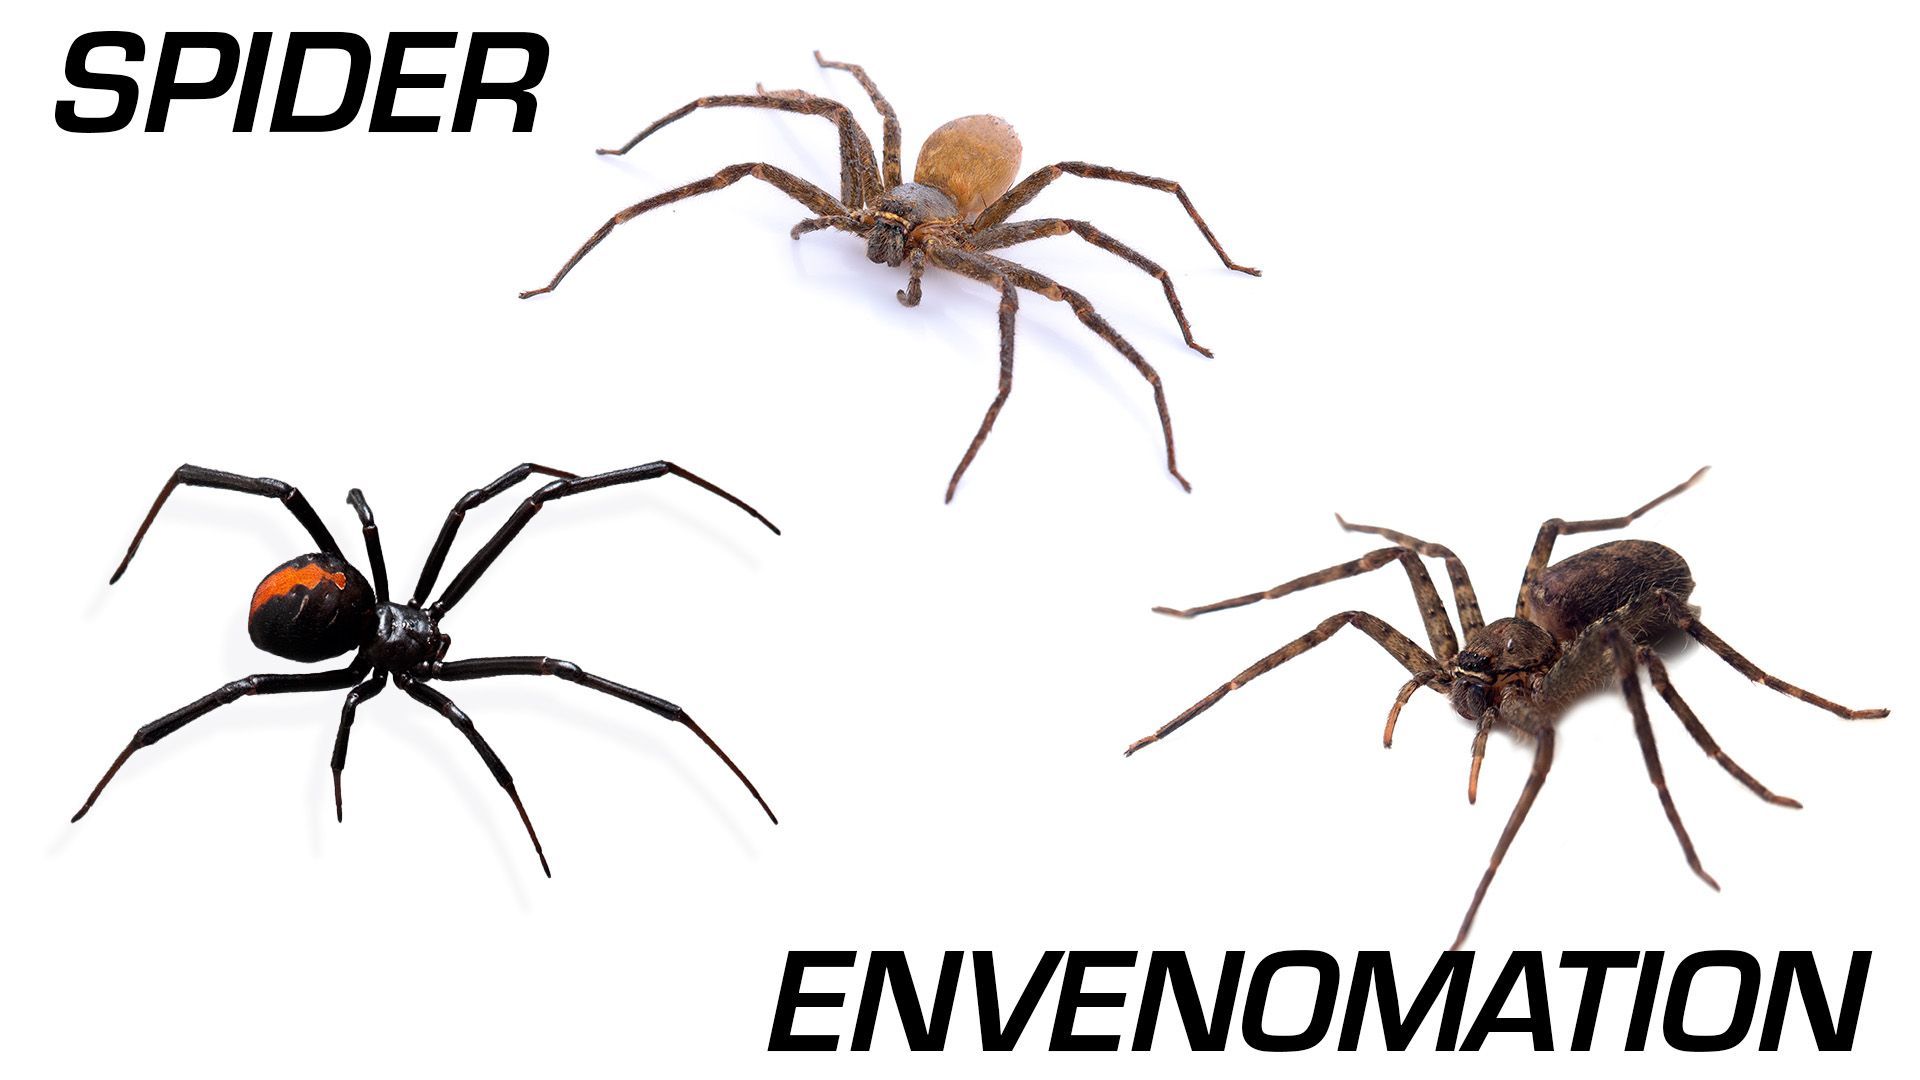 Spider Envenomation